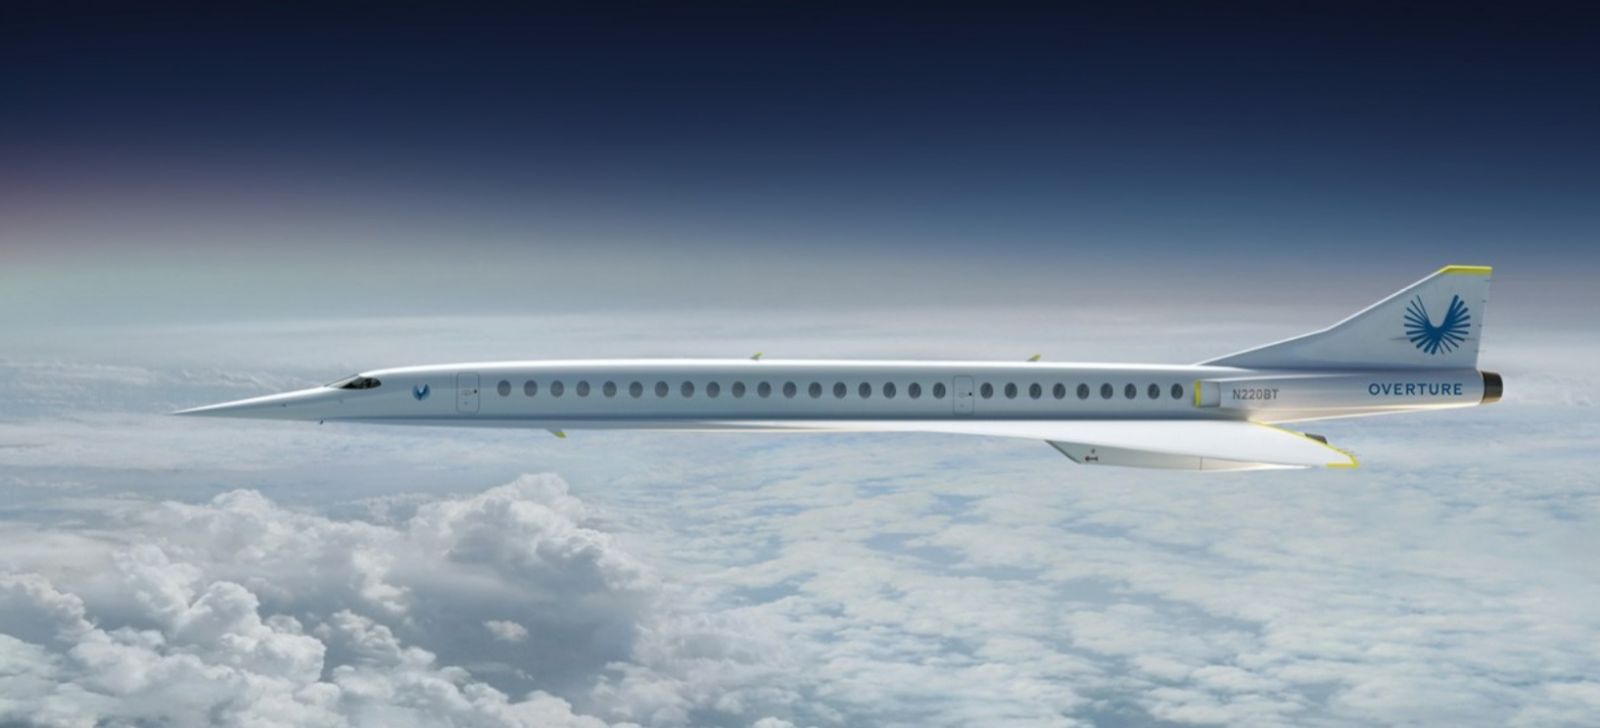 El Concorde resucita, volará al doble de la velocidad del sonido 